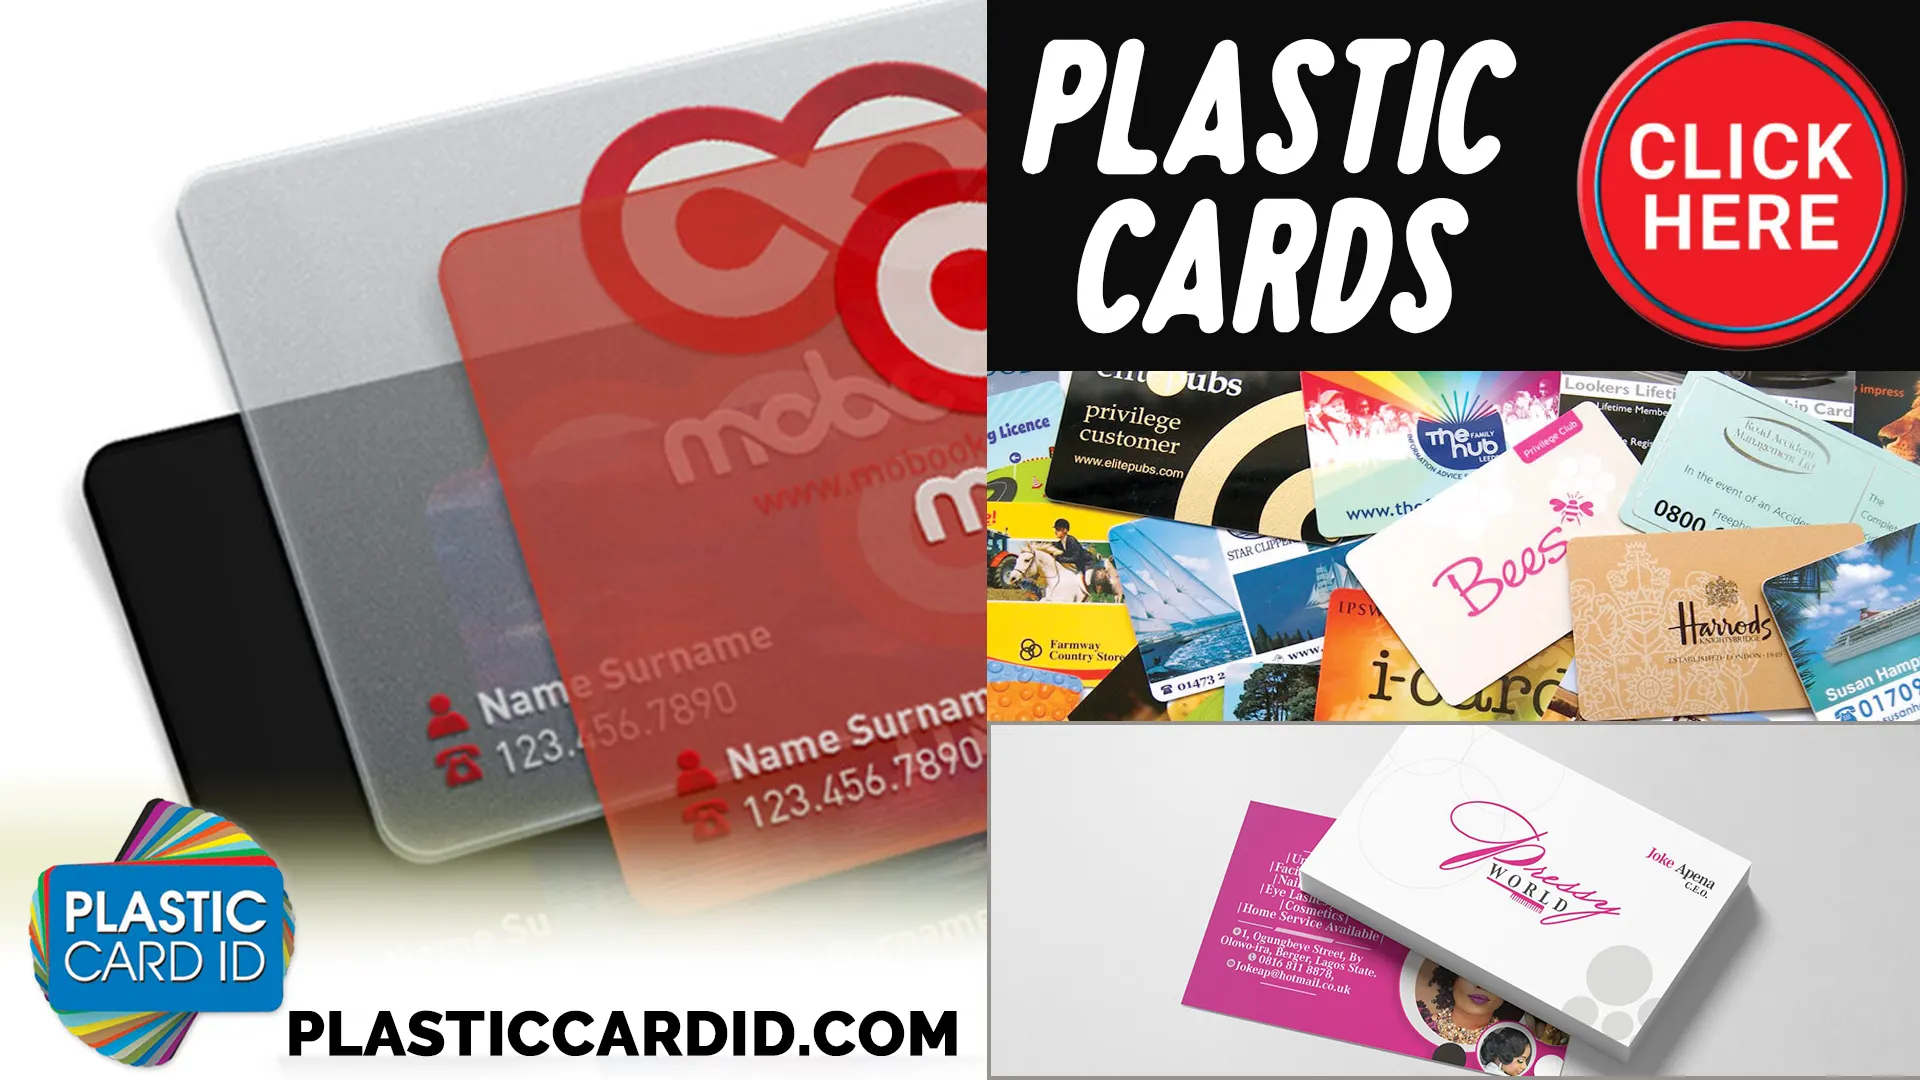 User-Focused Design in Plastic Cards